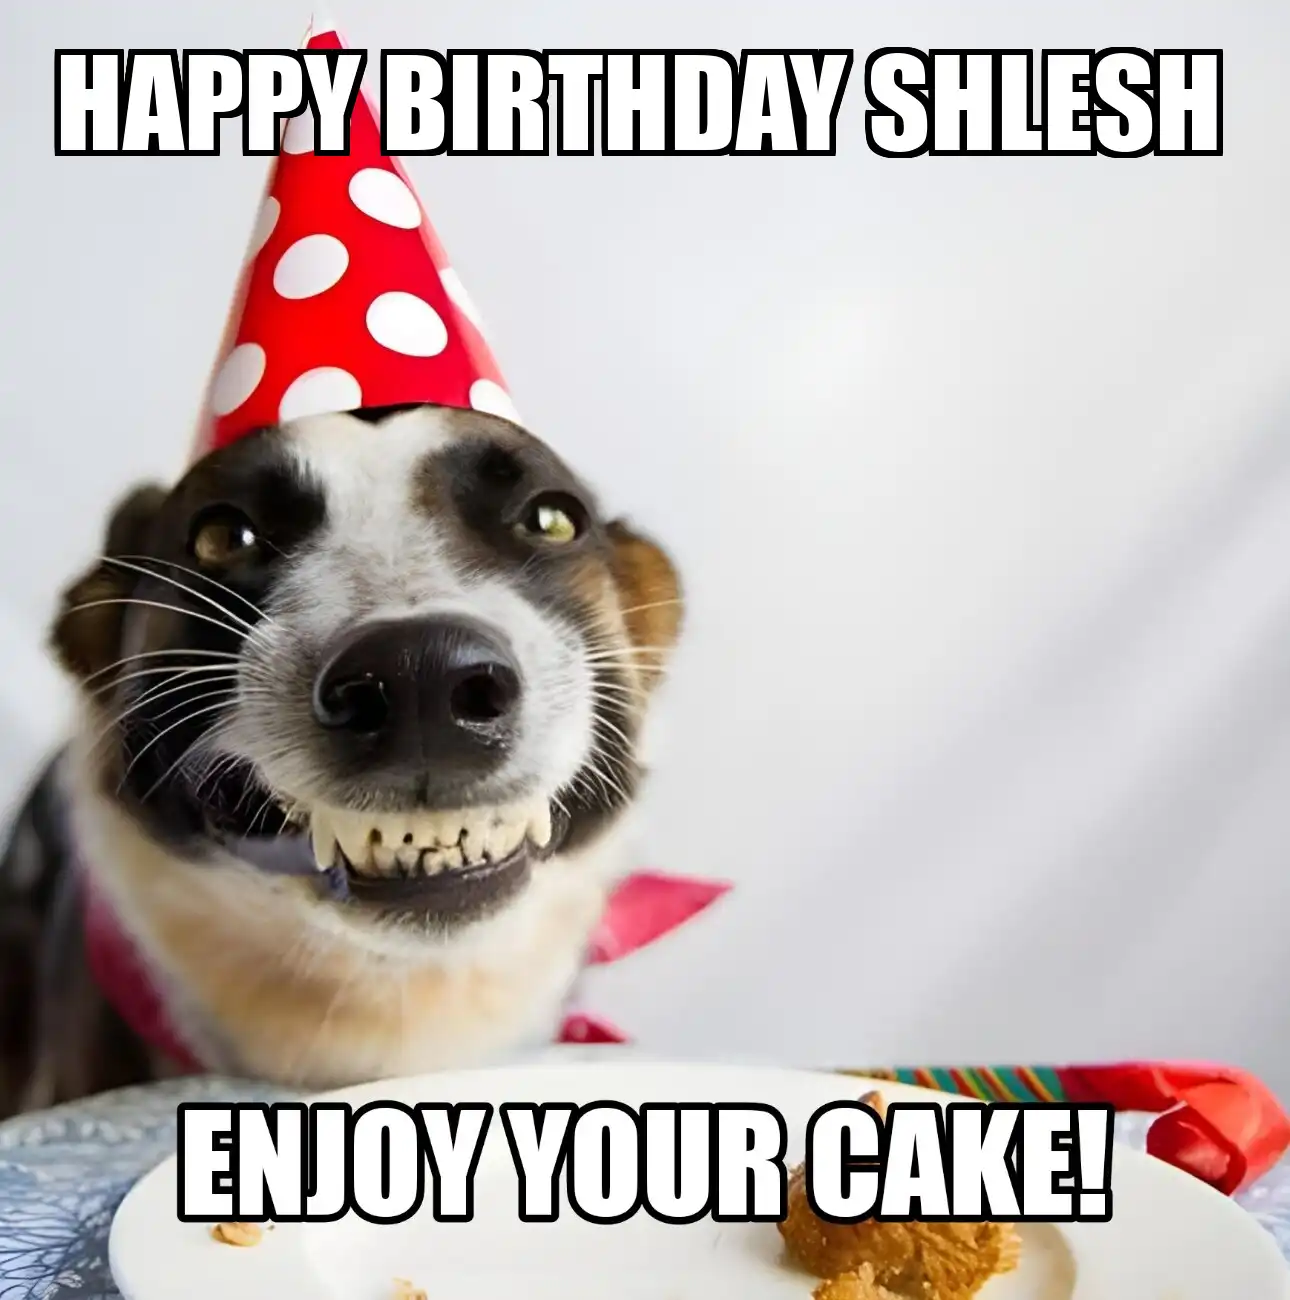 Happy Birthday Shlesh Enjoy Your Cake Dog Meme